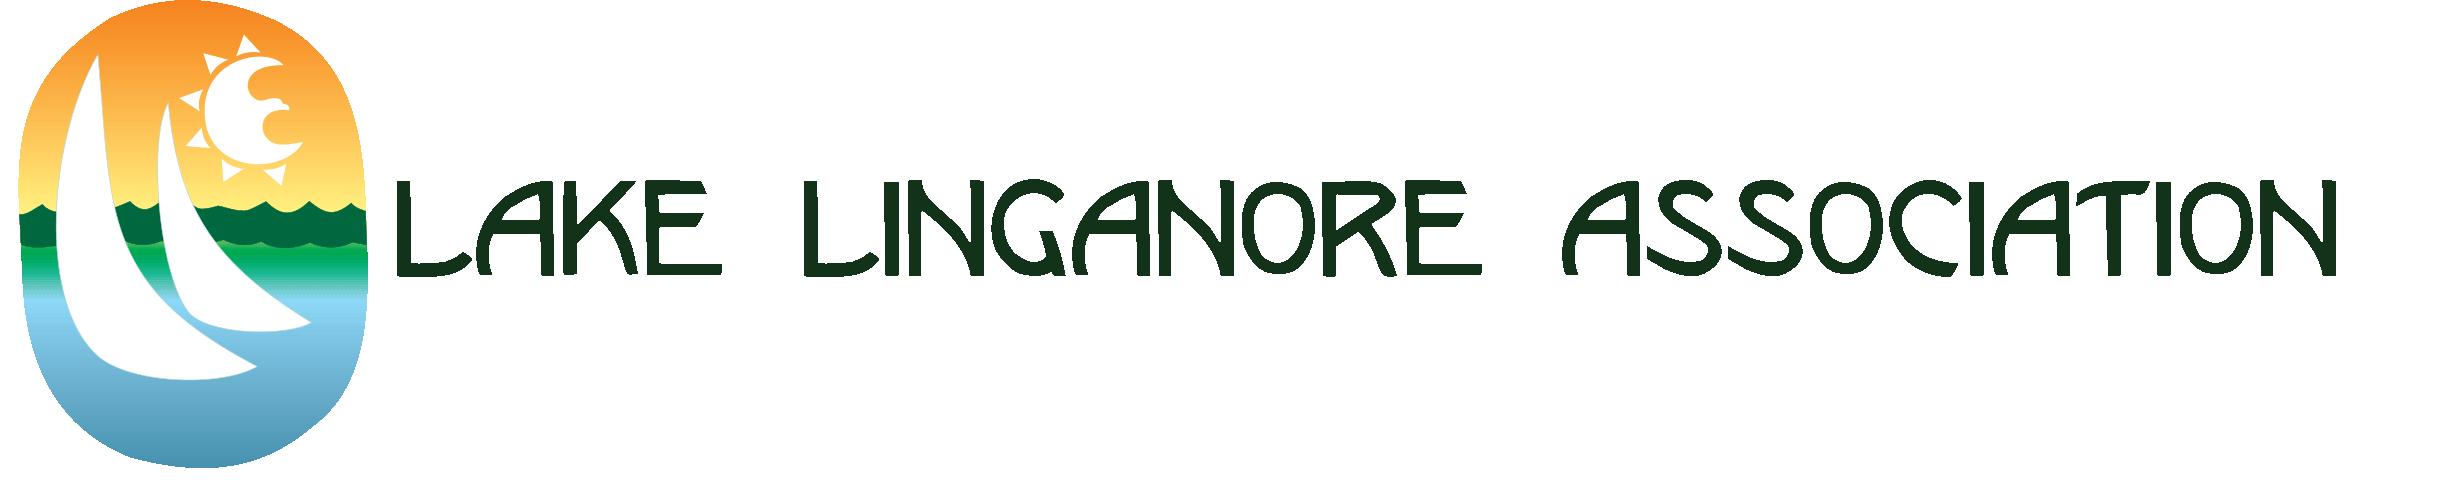 lake linganore logo.gif